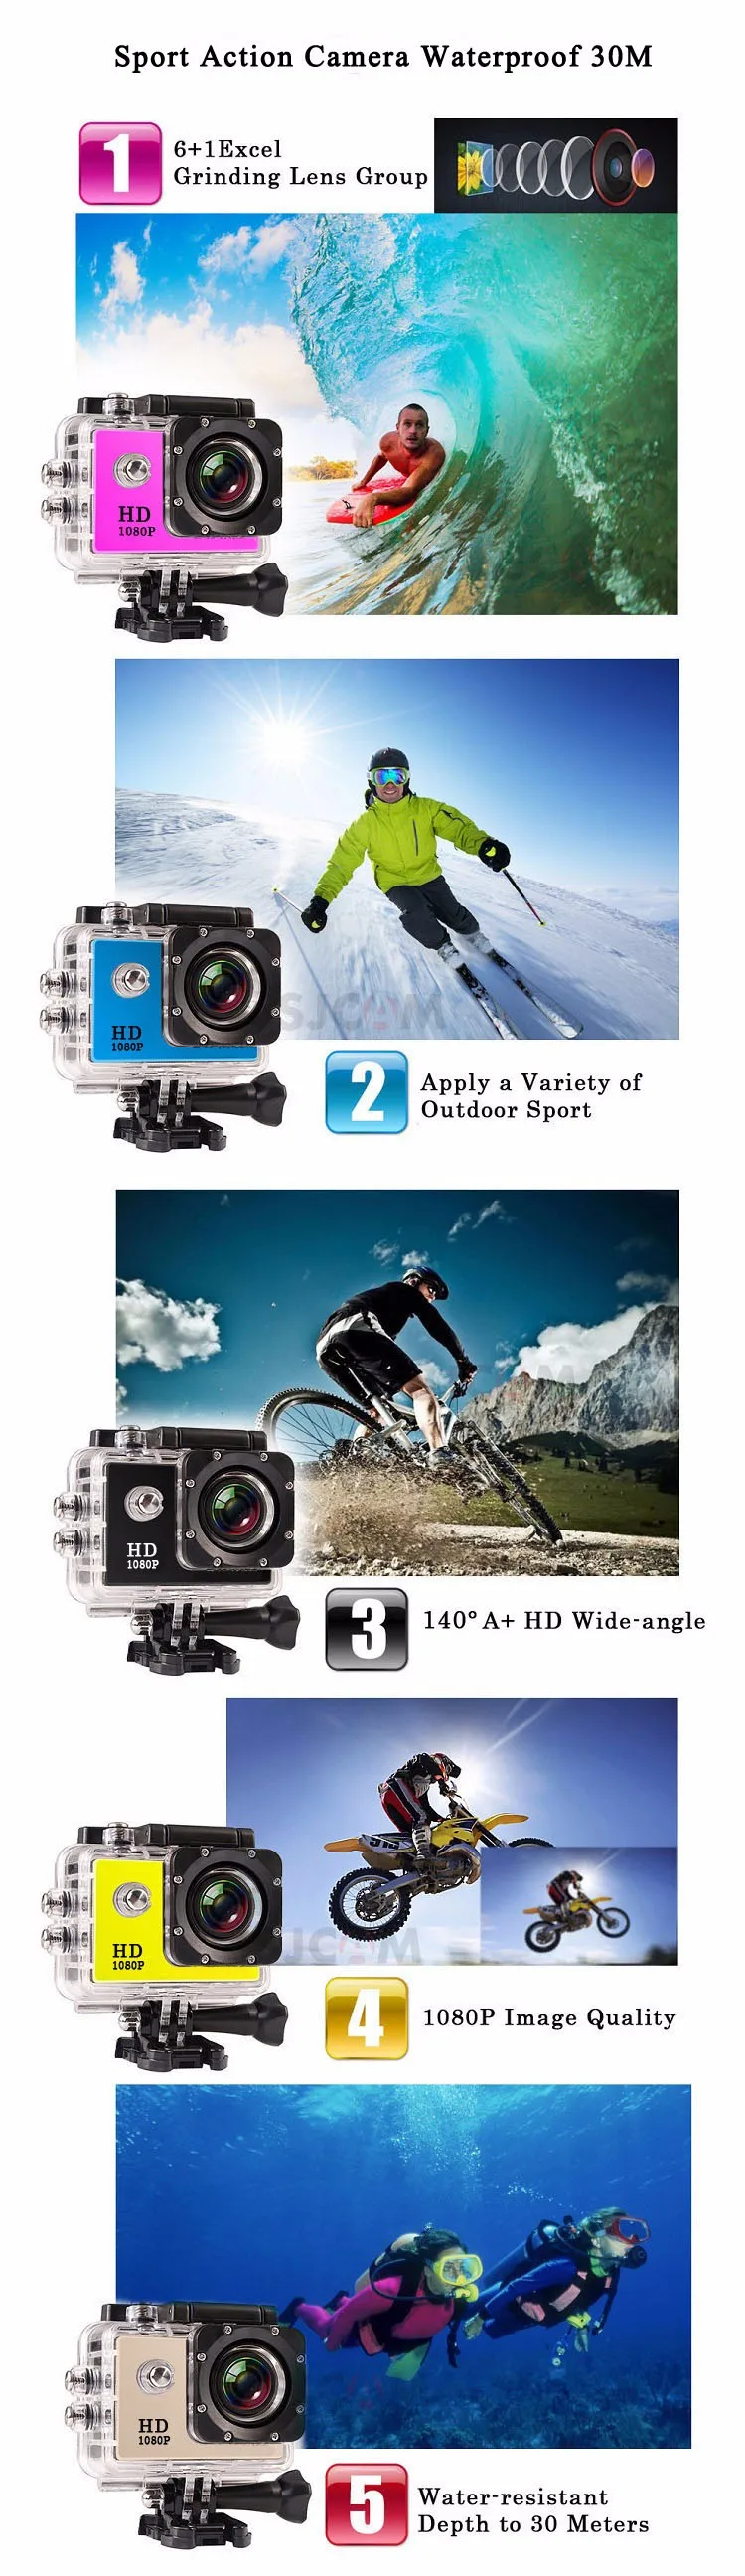 HD открытый мини Спорт Действие камера 1080 P камера с защитой от влаги DV gopro стиль go pro с экран полный цвет водостойкий